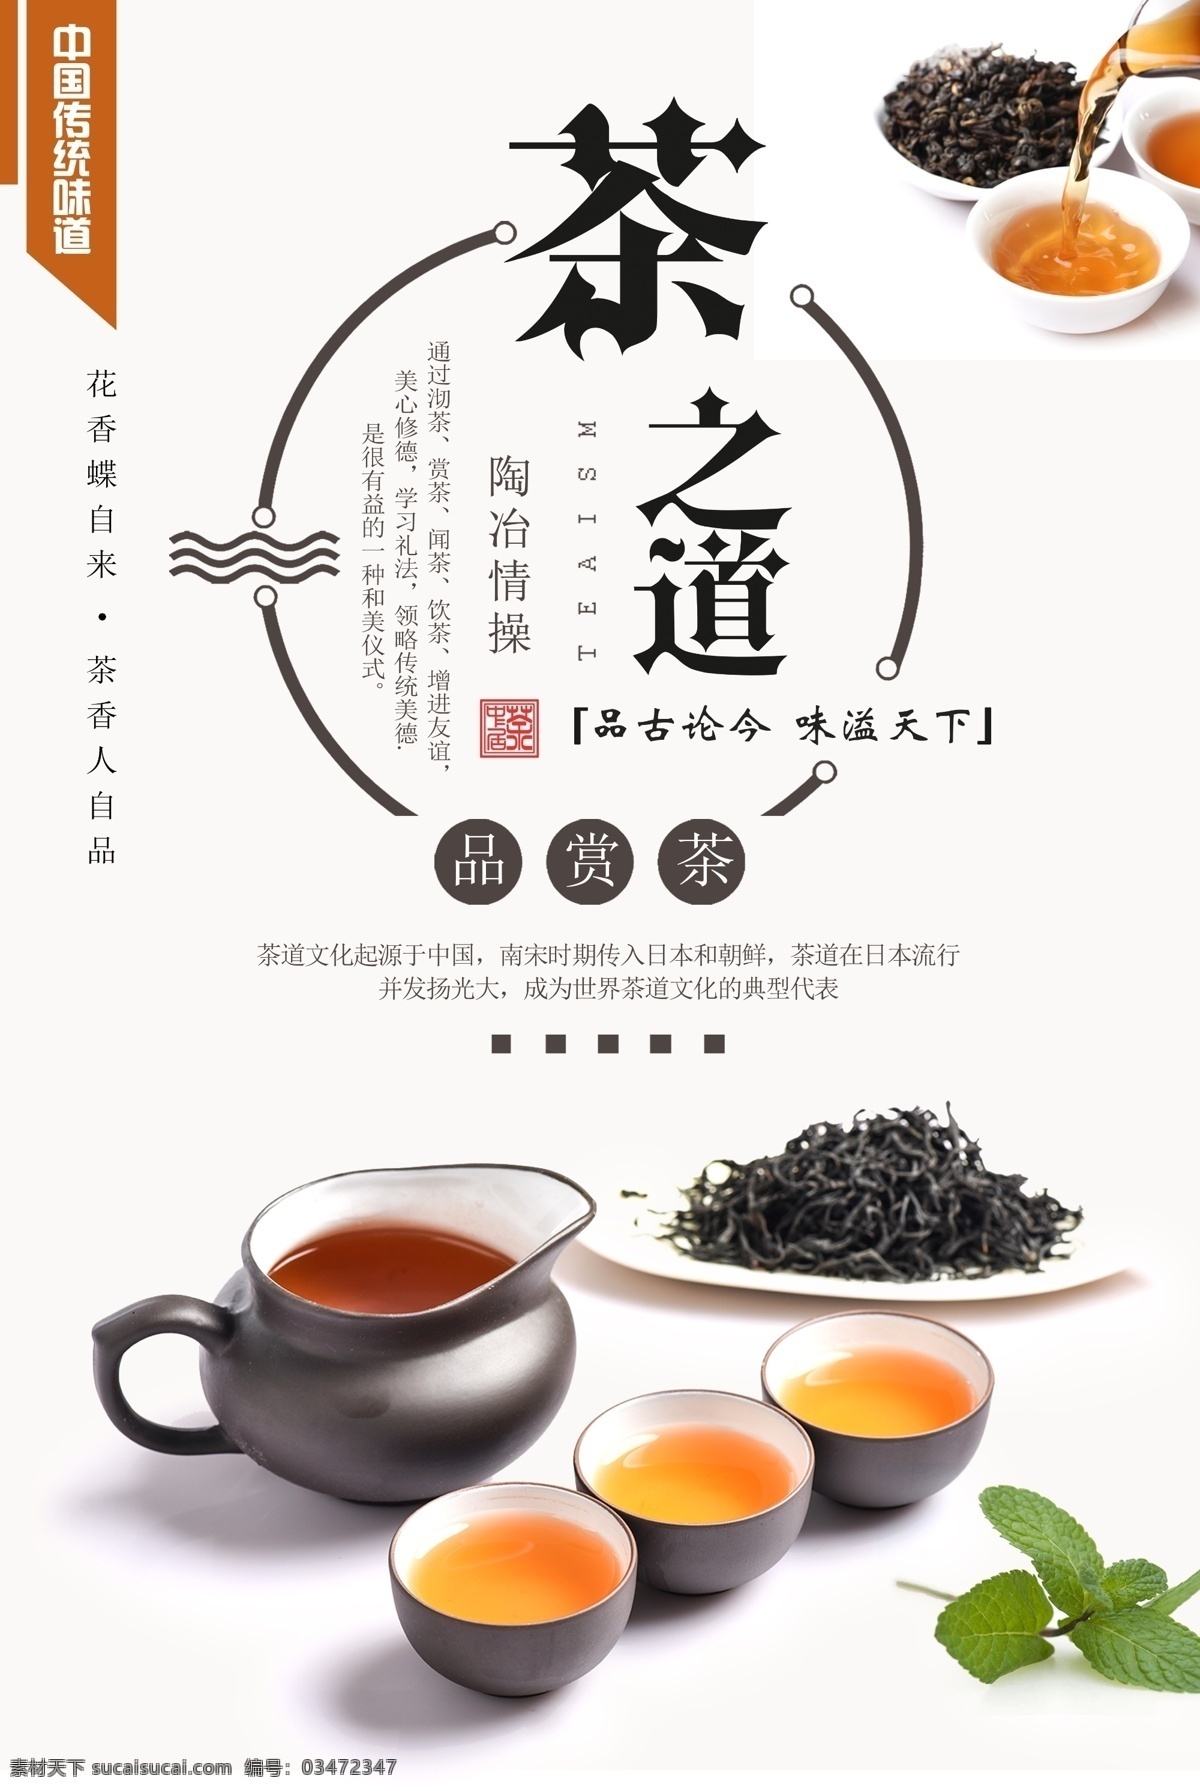 茶道文化海报 茶 茶文化 茶韵 茶艺 茶道 茶馆海报 中国茶 茶叶 红茶 绿茶